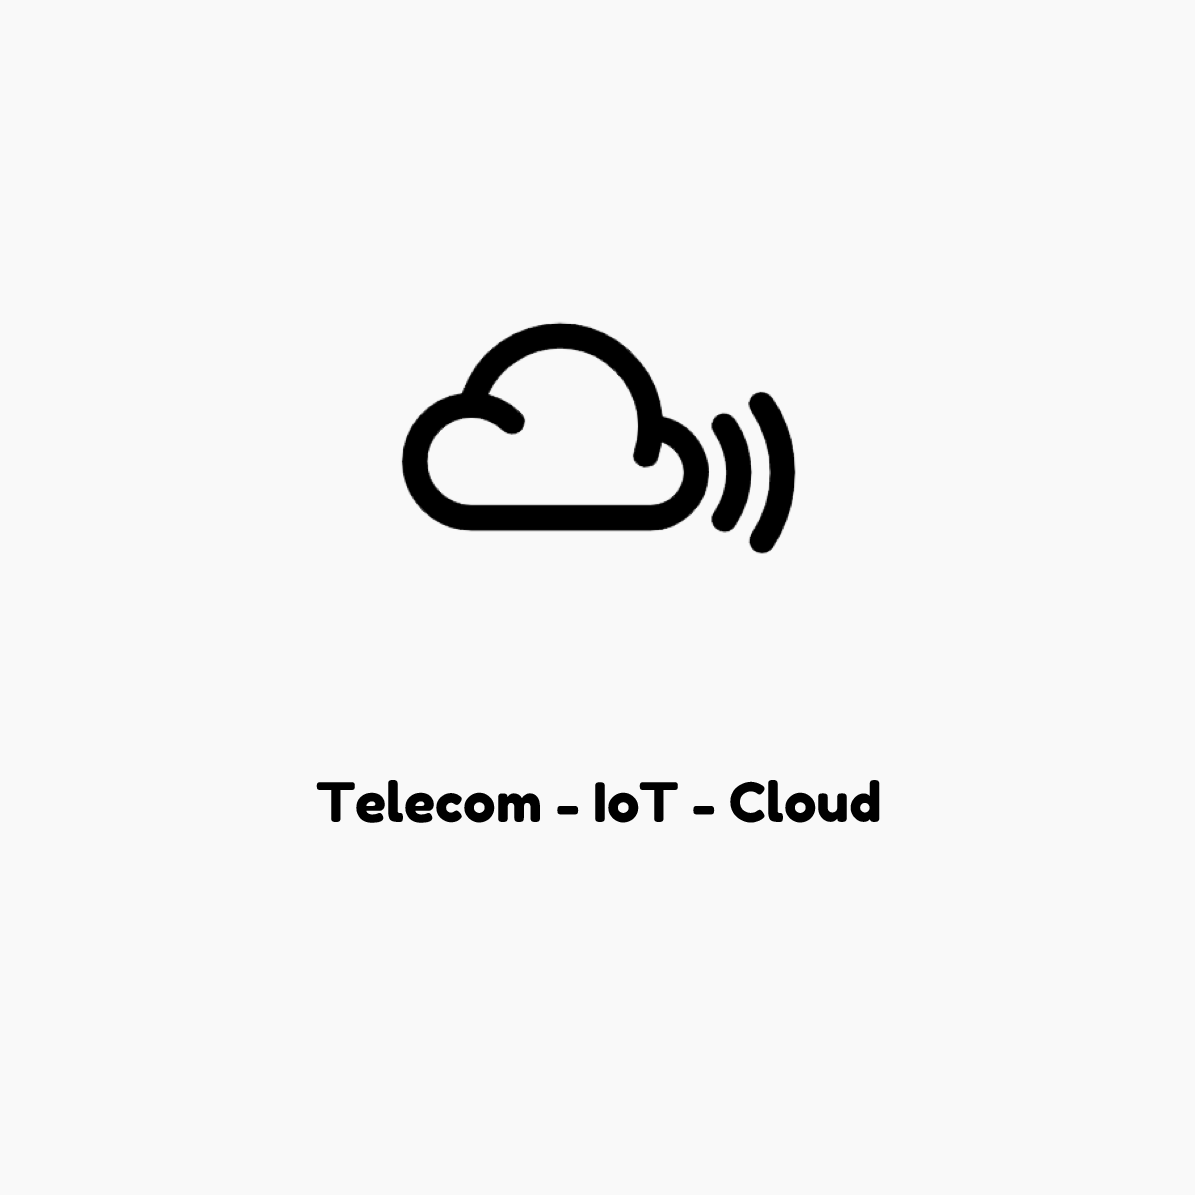 Telecom-IoT-Cloud